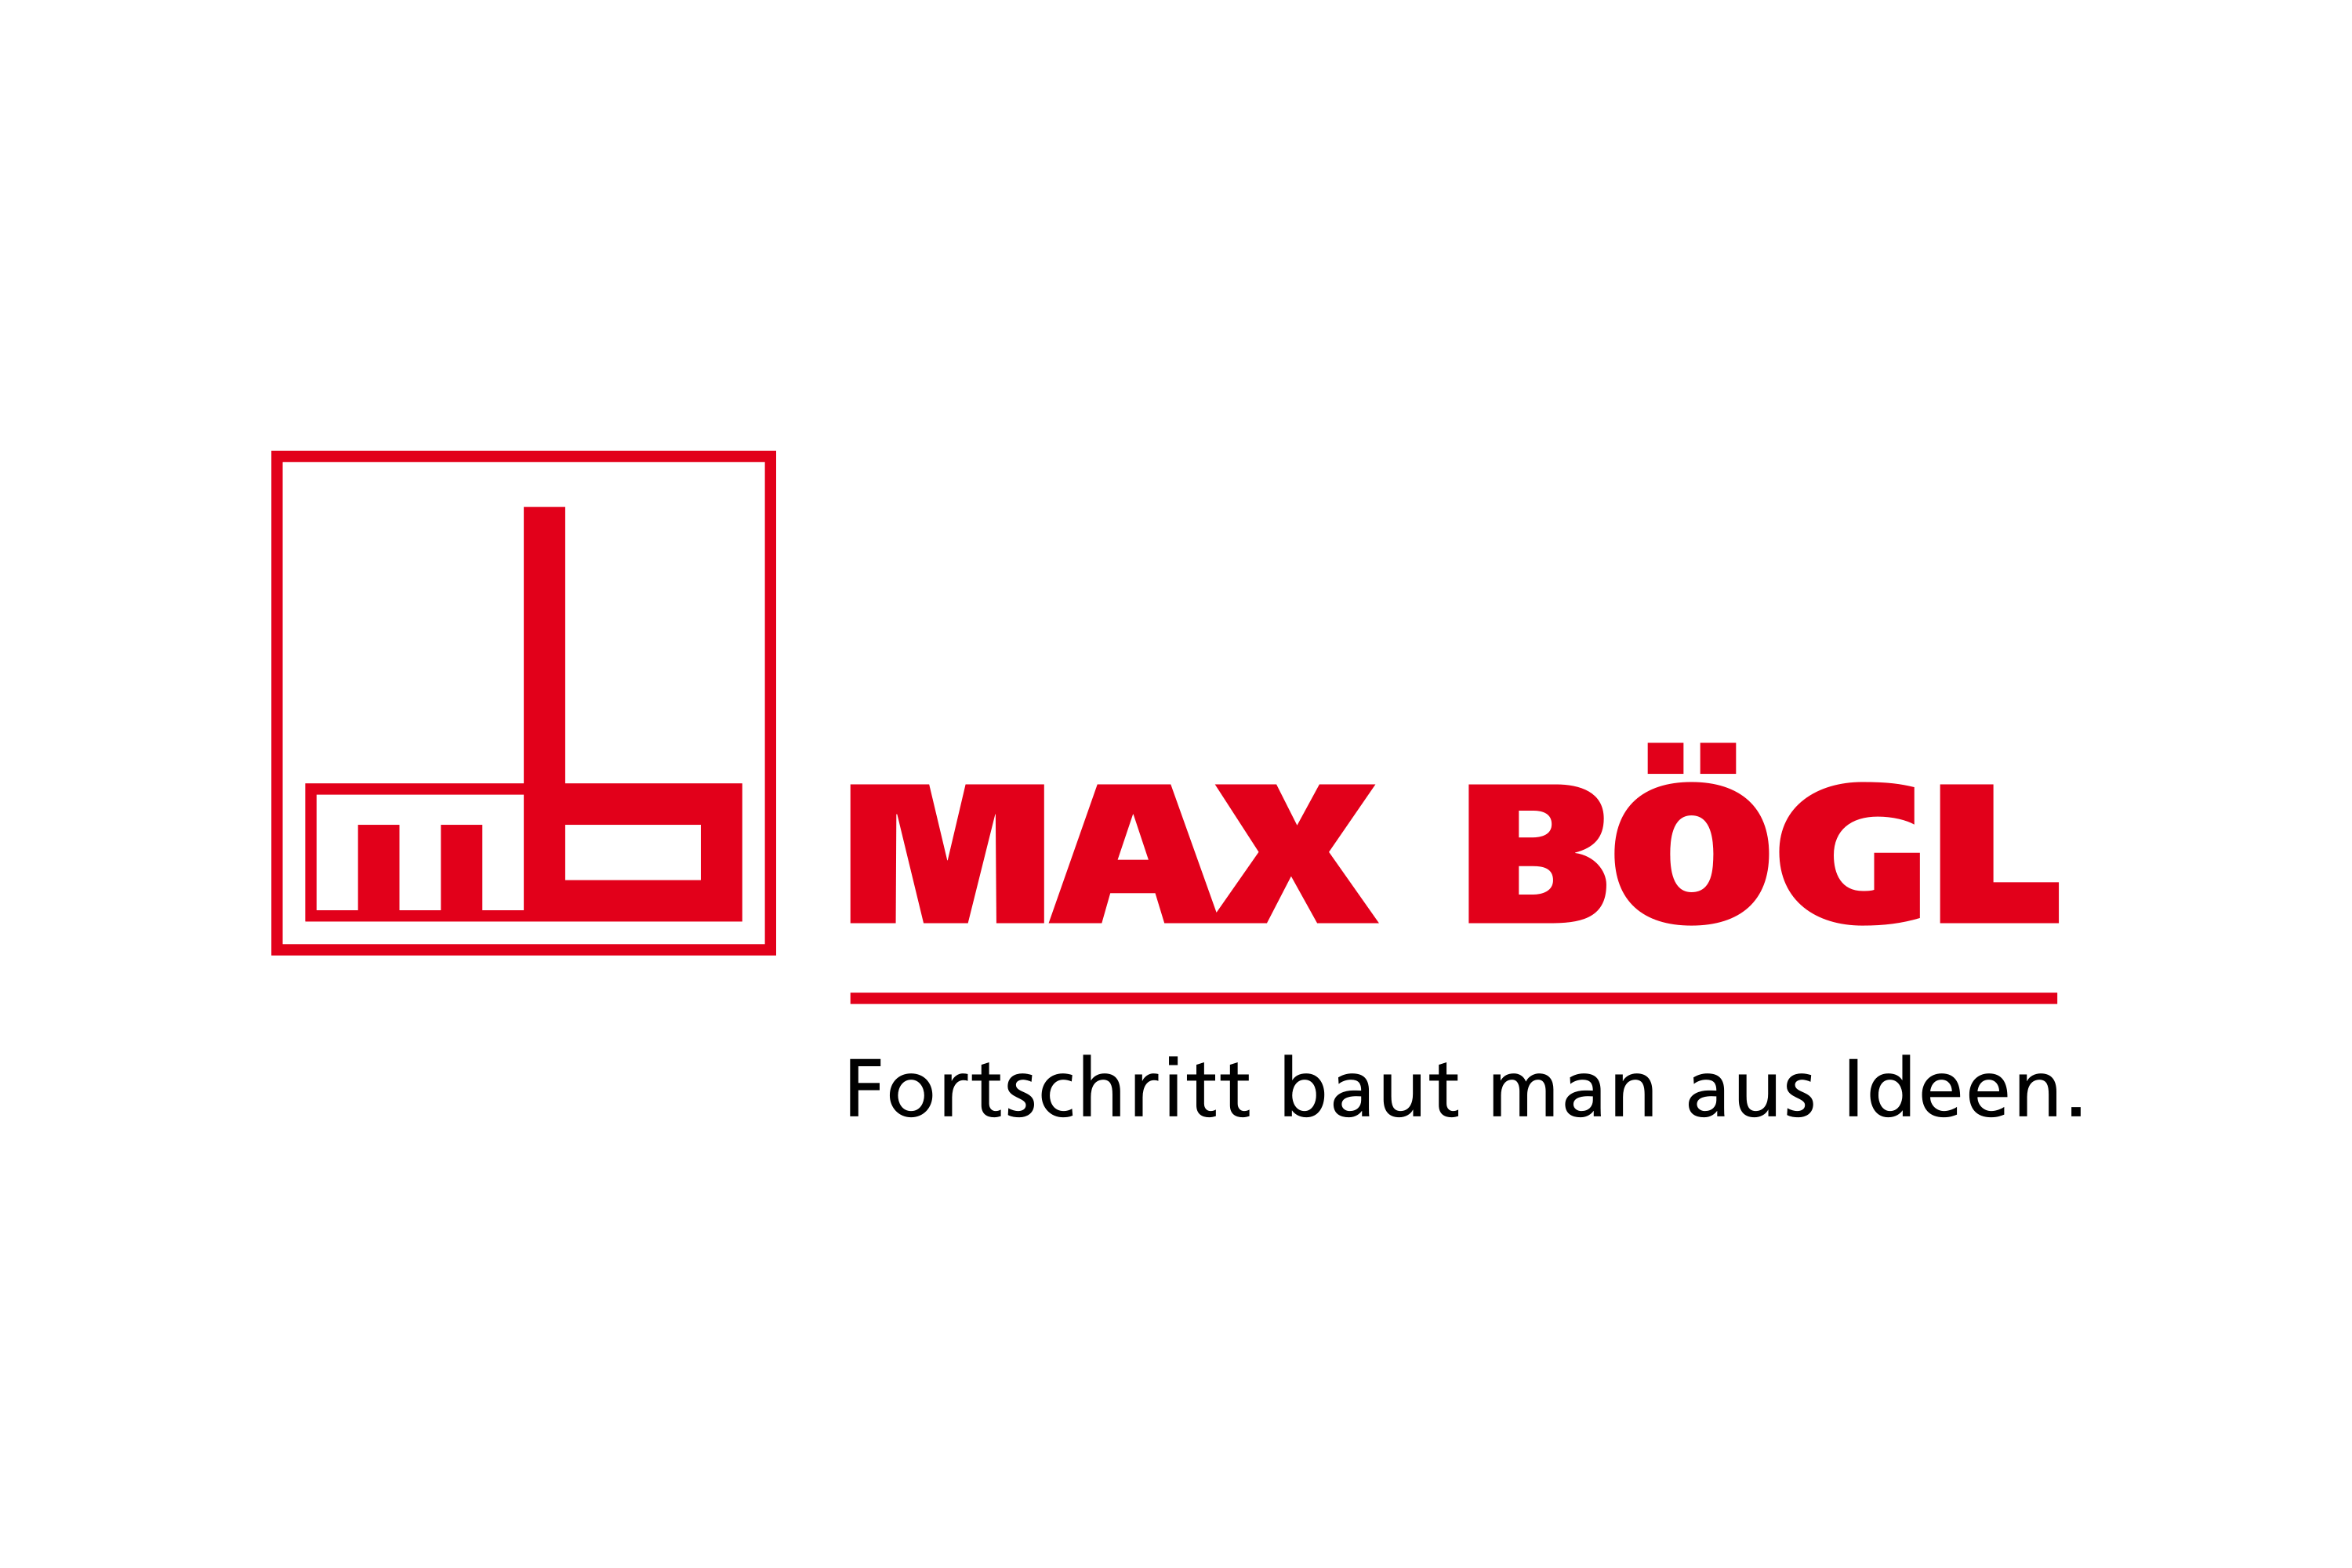 Max Bögl Logo